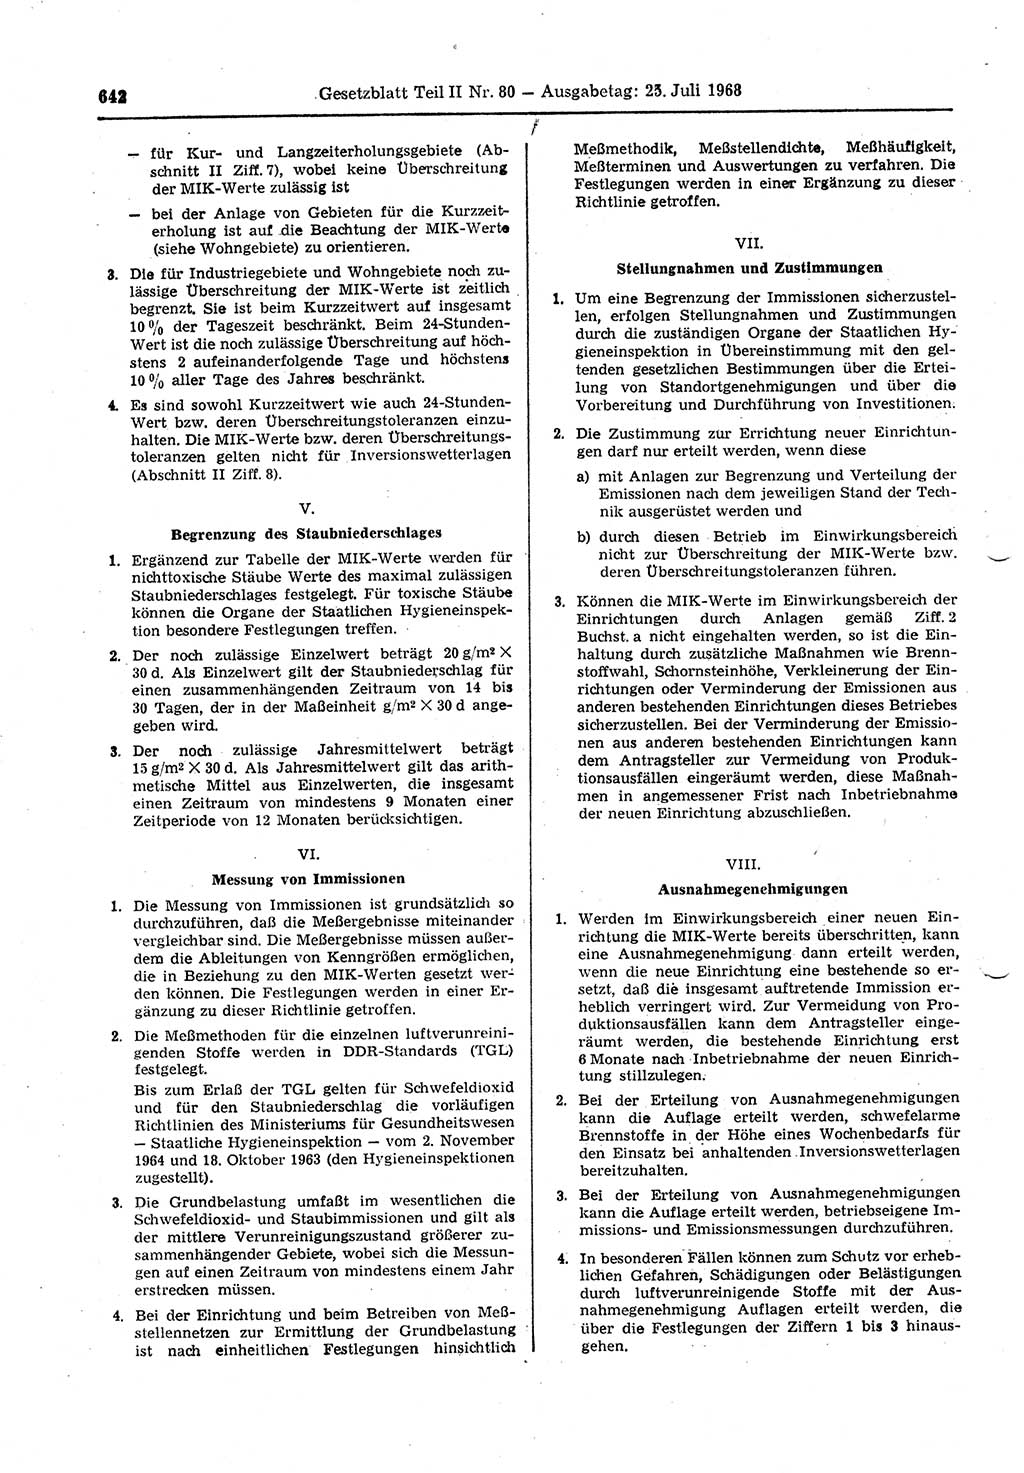 Gesetzblatt (GBl.) der Deutschen Demokratischen Republik (DDR) Teil ⅠⅠ 1968, Seite 642 (GBl. DDR ⅠⅠ 1968, S. 642)